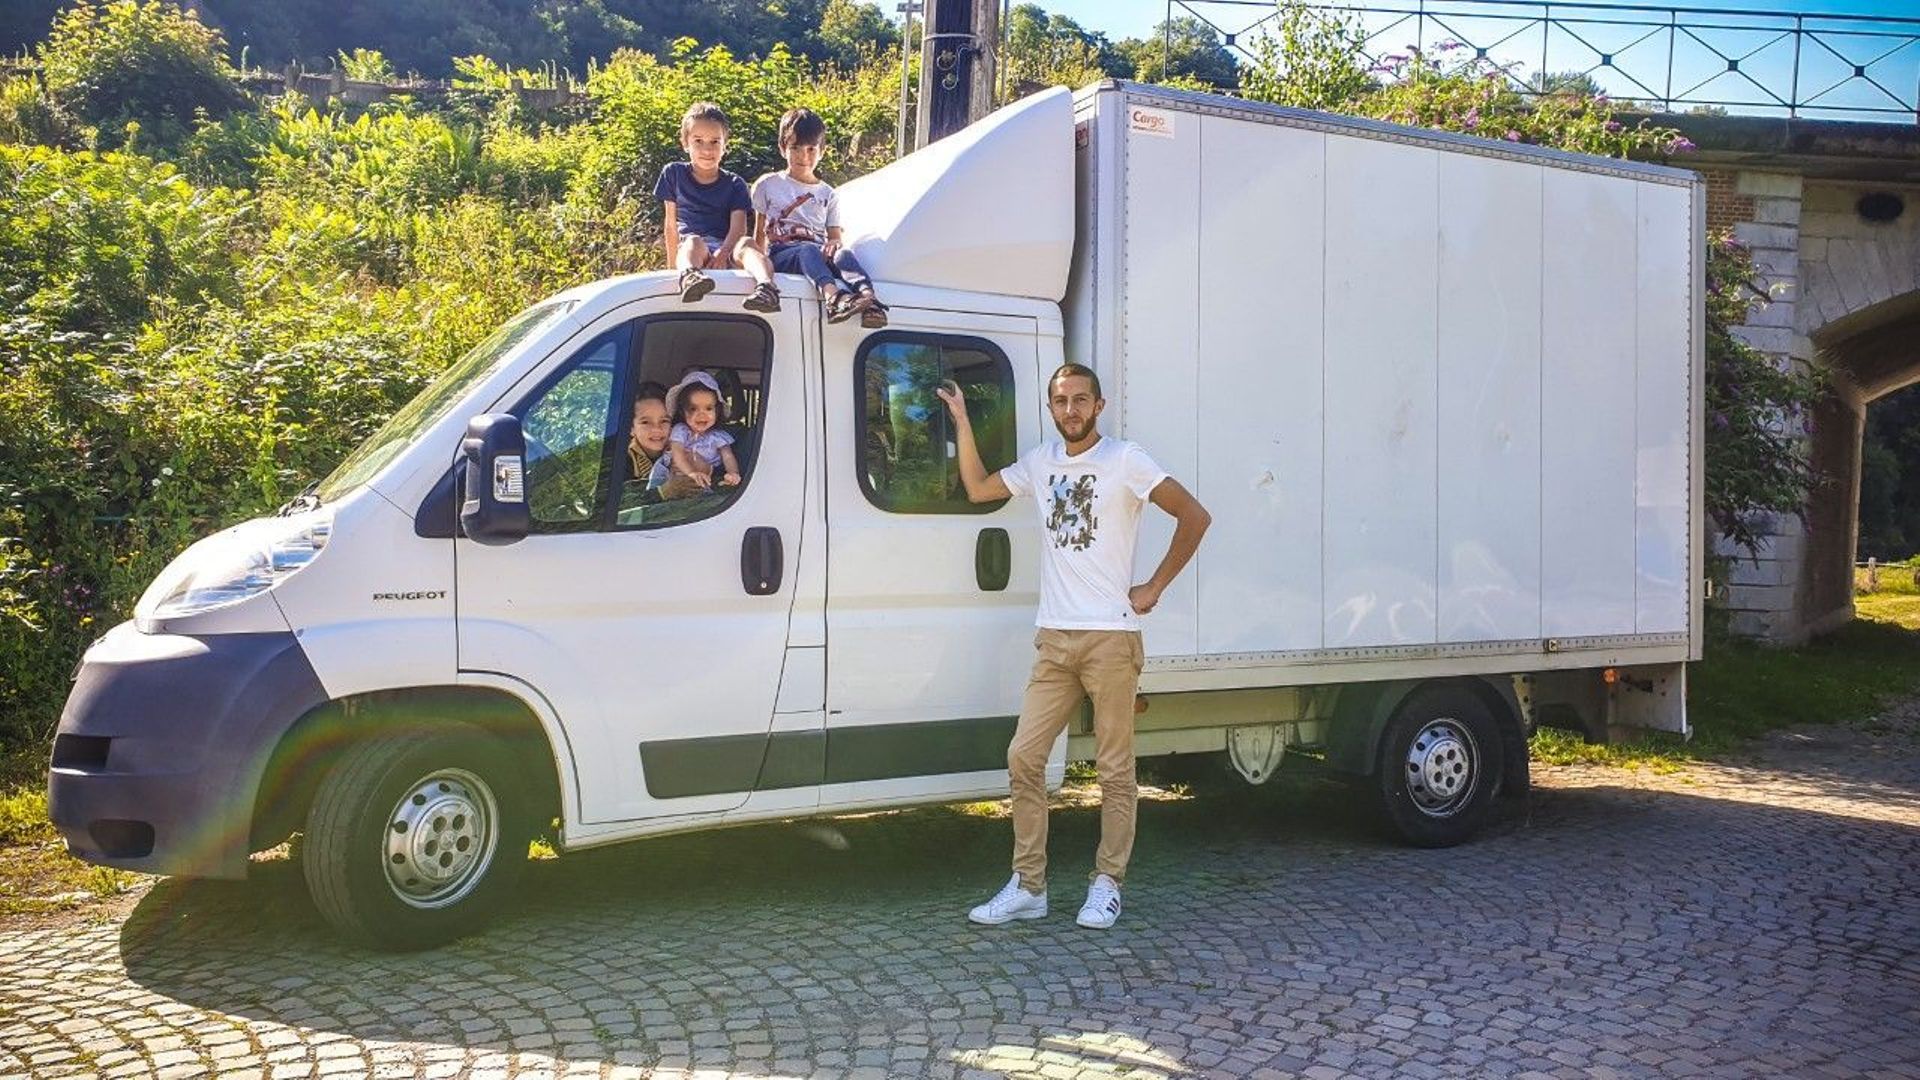 La famille Touati s’apprête à réaliser un tour du monde de deux ans dans leur camionnette aménagée.